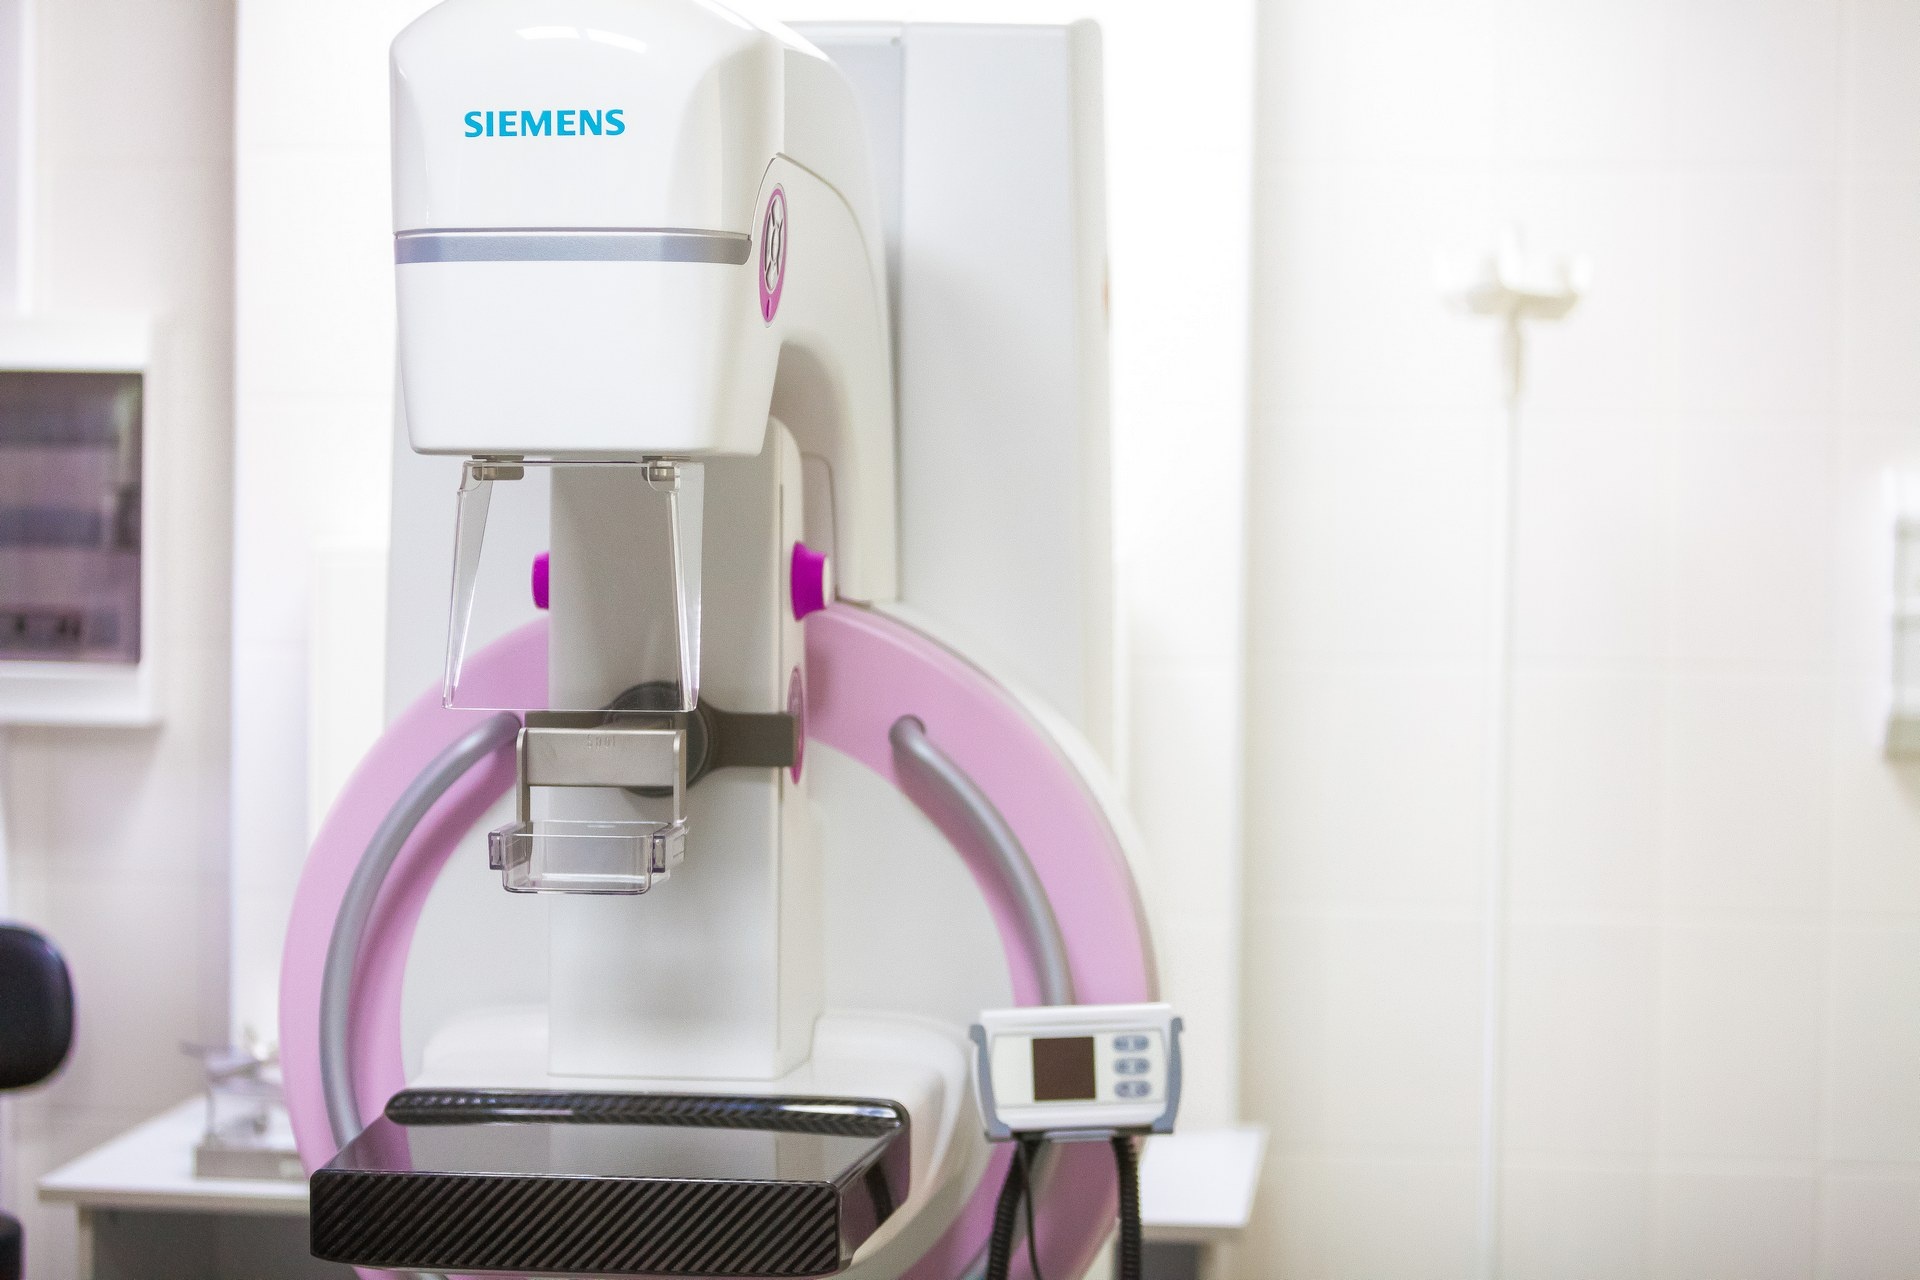 Новый маммограф — низкодозовый, поэтому врачи смогут делать столько исследований пациентам, сколько это необходимо